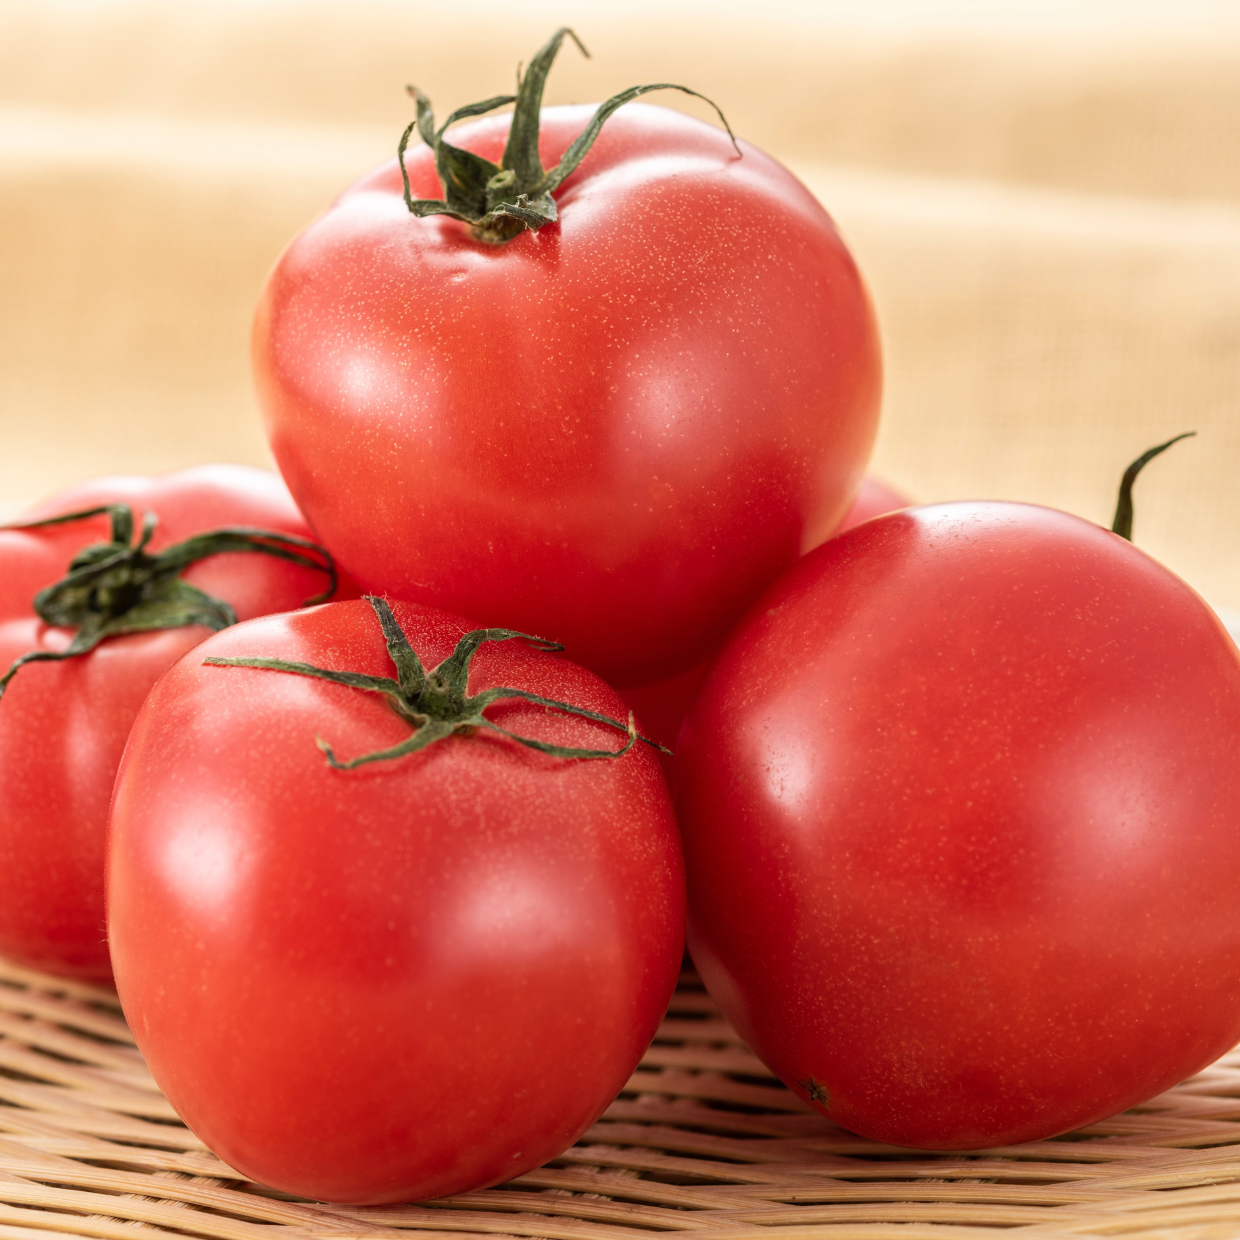  「トマト」は生のままじゃもったいない！栄養をムダなく摂取する”トマトの賢い食べ方” 